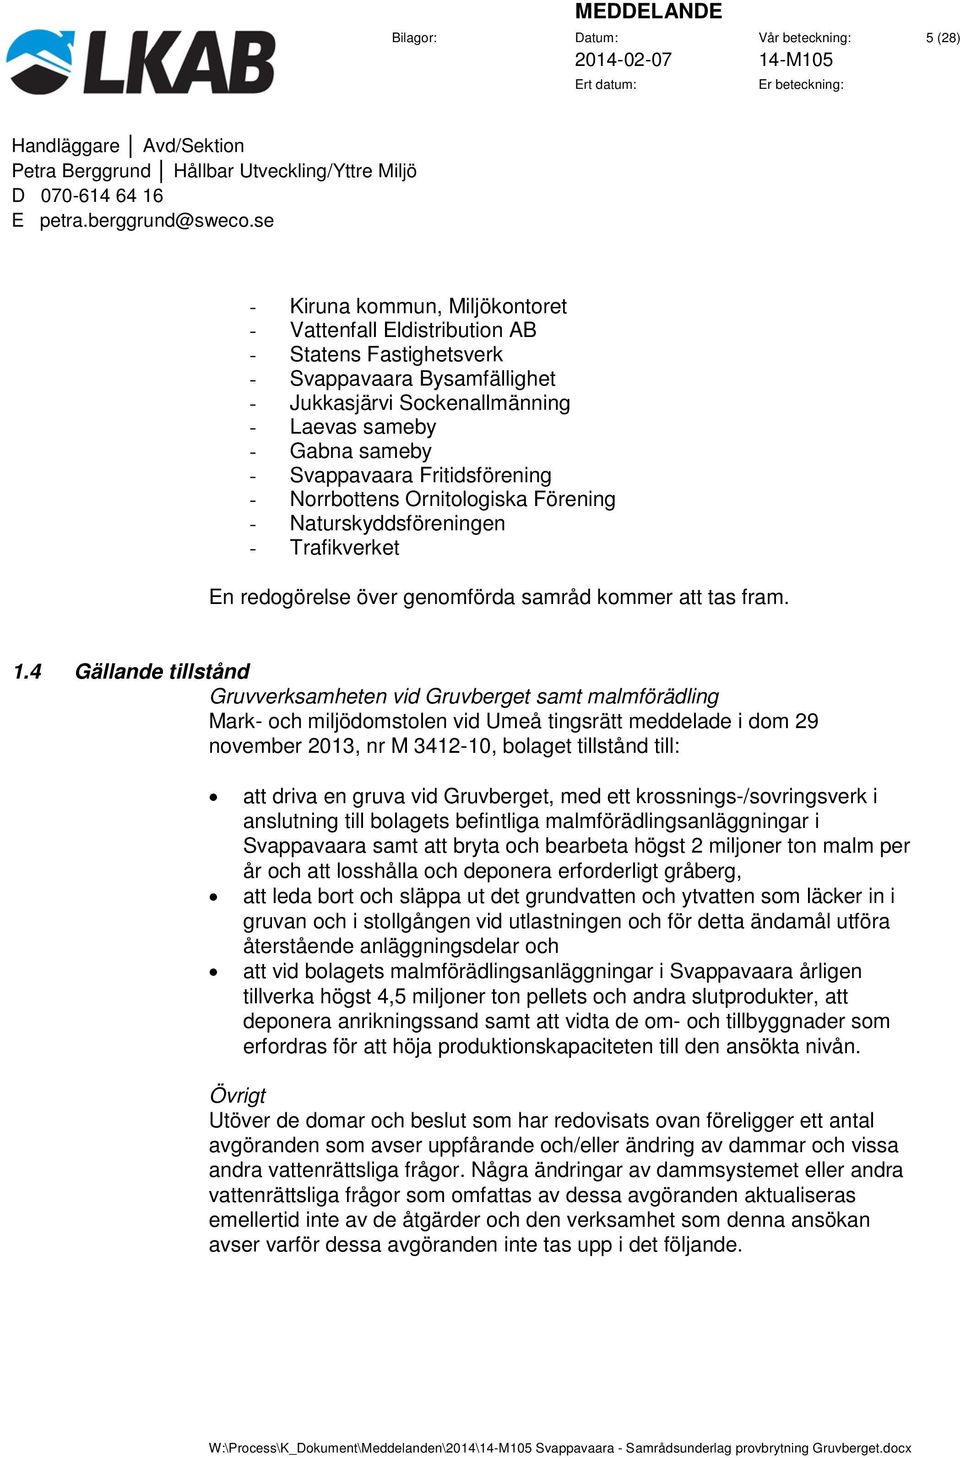 4 Gällande tillstånd Gruvverksamheten vid Gruvberget samt malmförädling Mark- och miljödomstolen vid Umeå tingsrätt meddelade i dom 29 november 2013, nr M 3412-10, bolaget tillstånd till: att driva